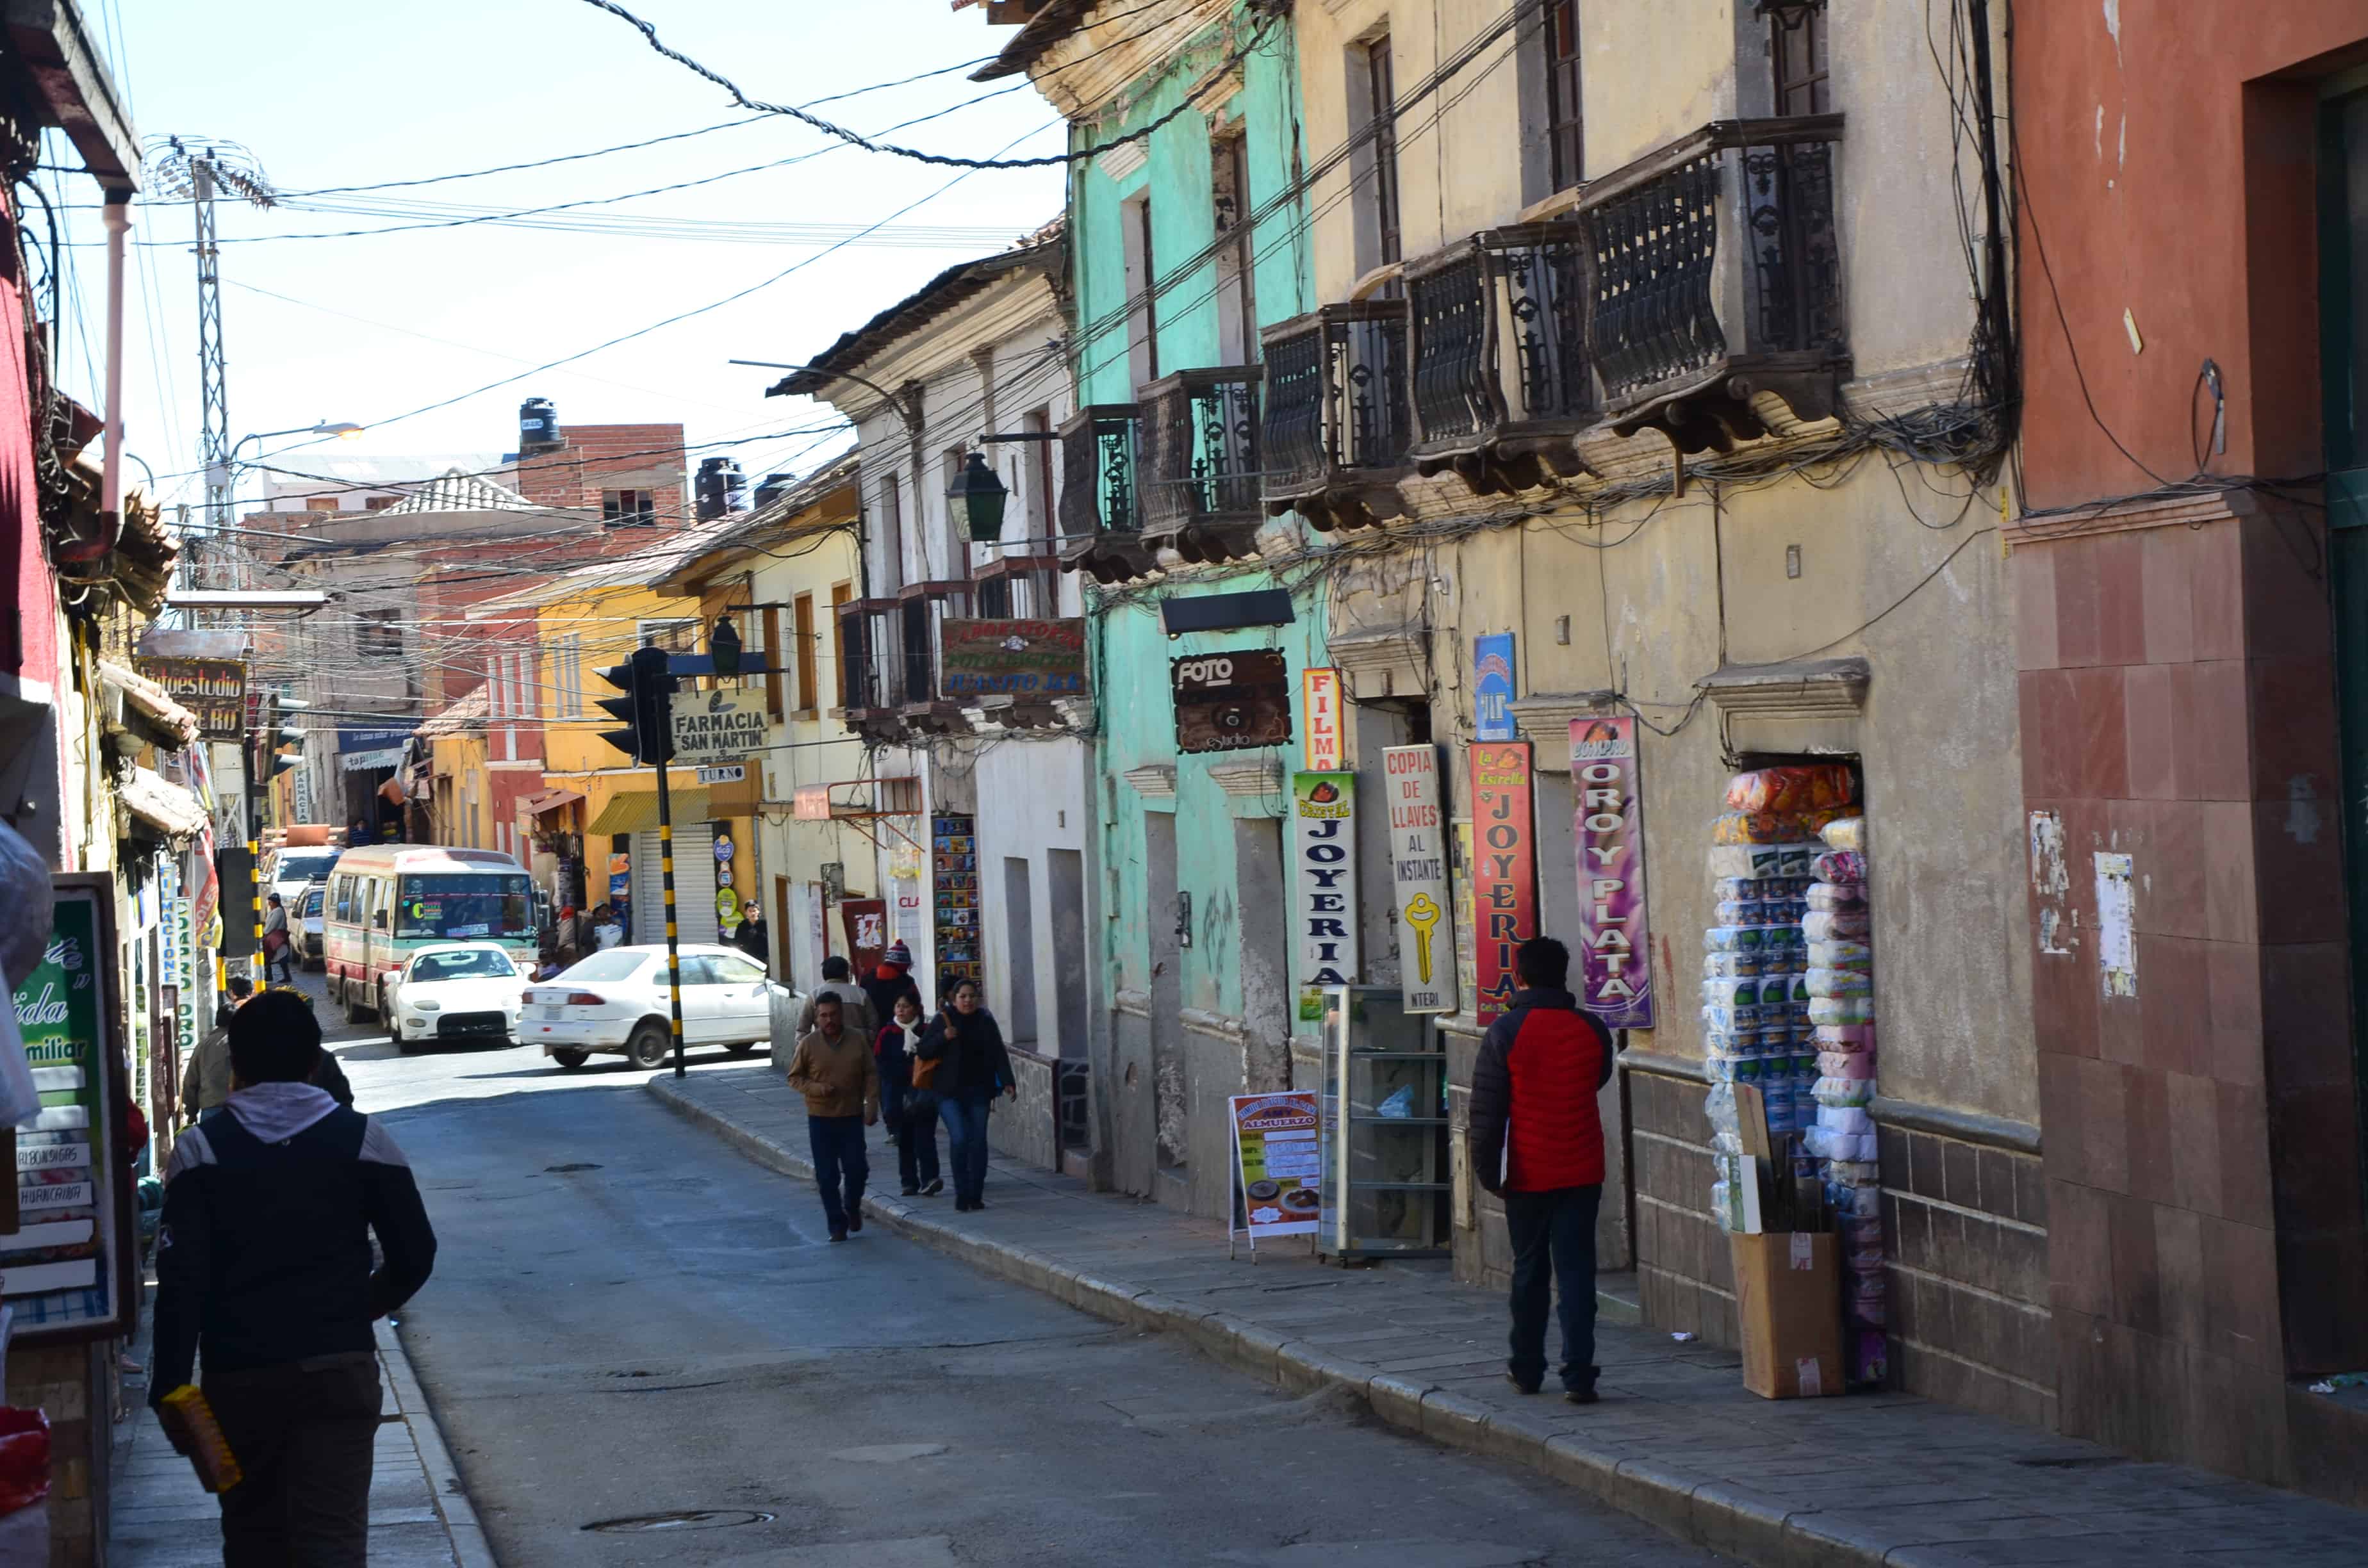 A street in Potosí, Bolivia